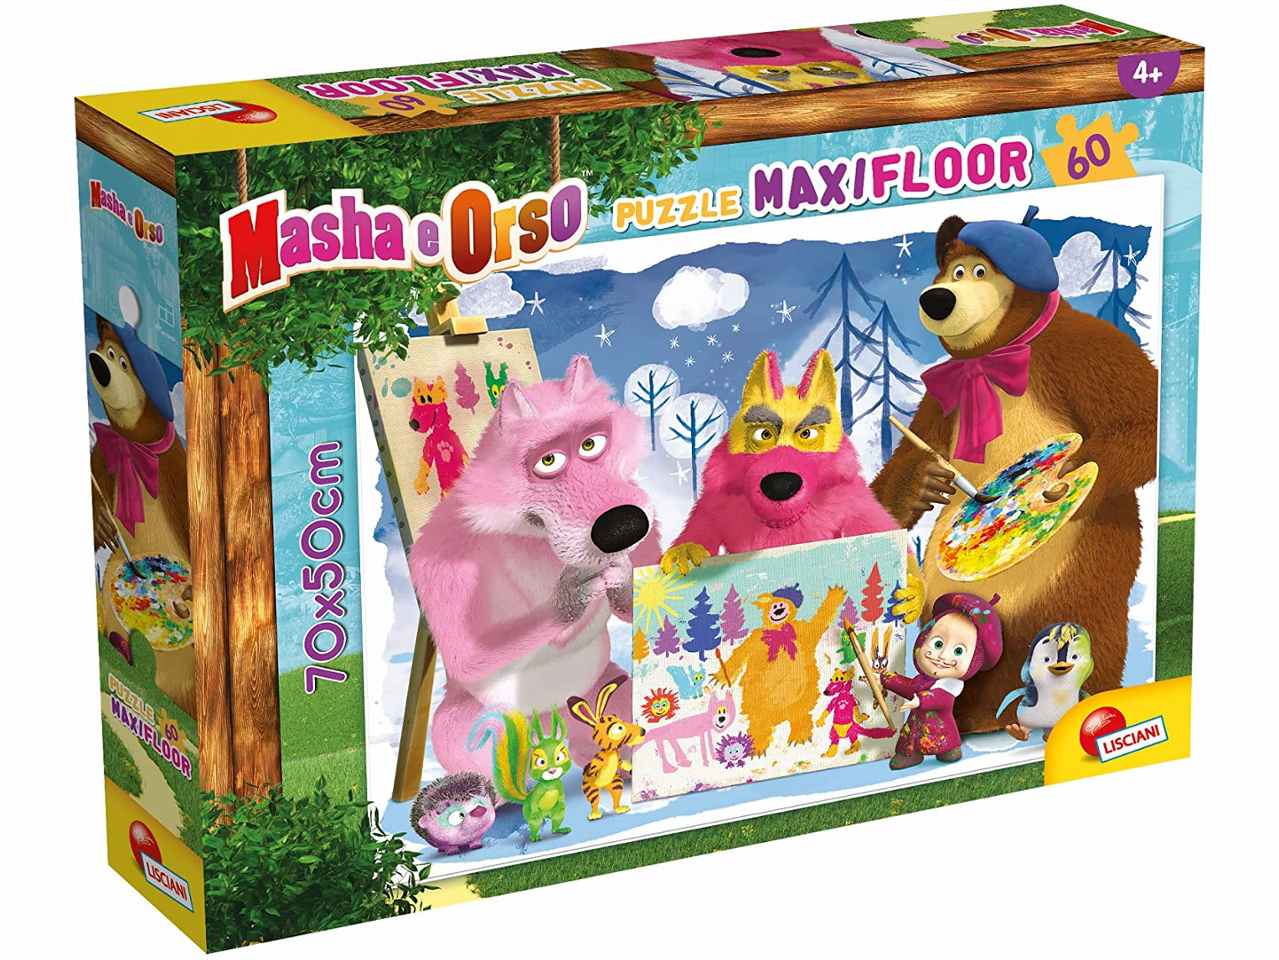 Masha puzzle maxifloor 60 b       92987